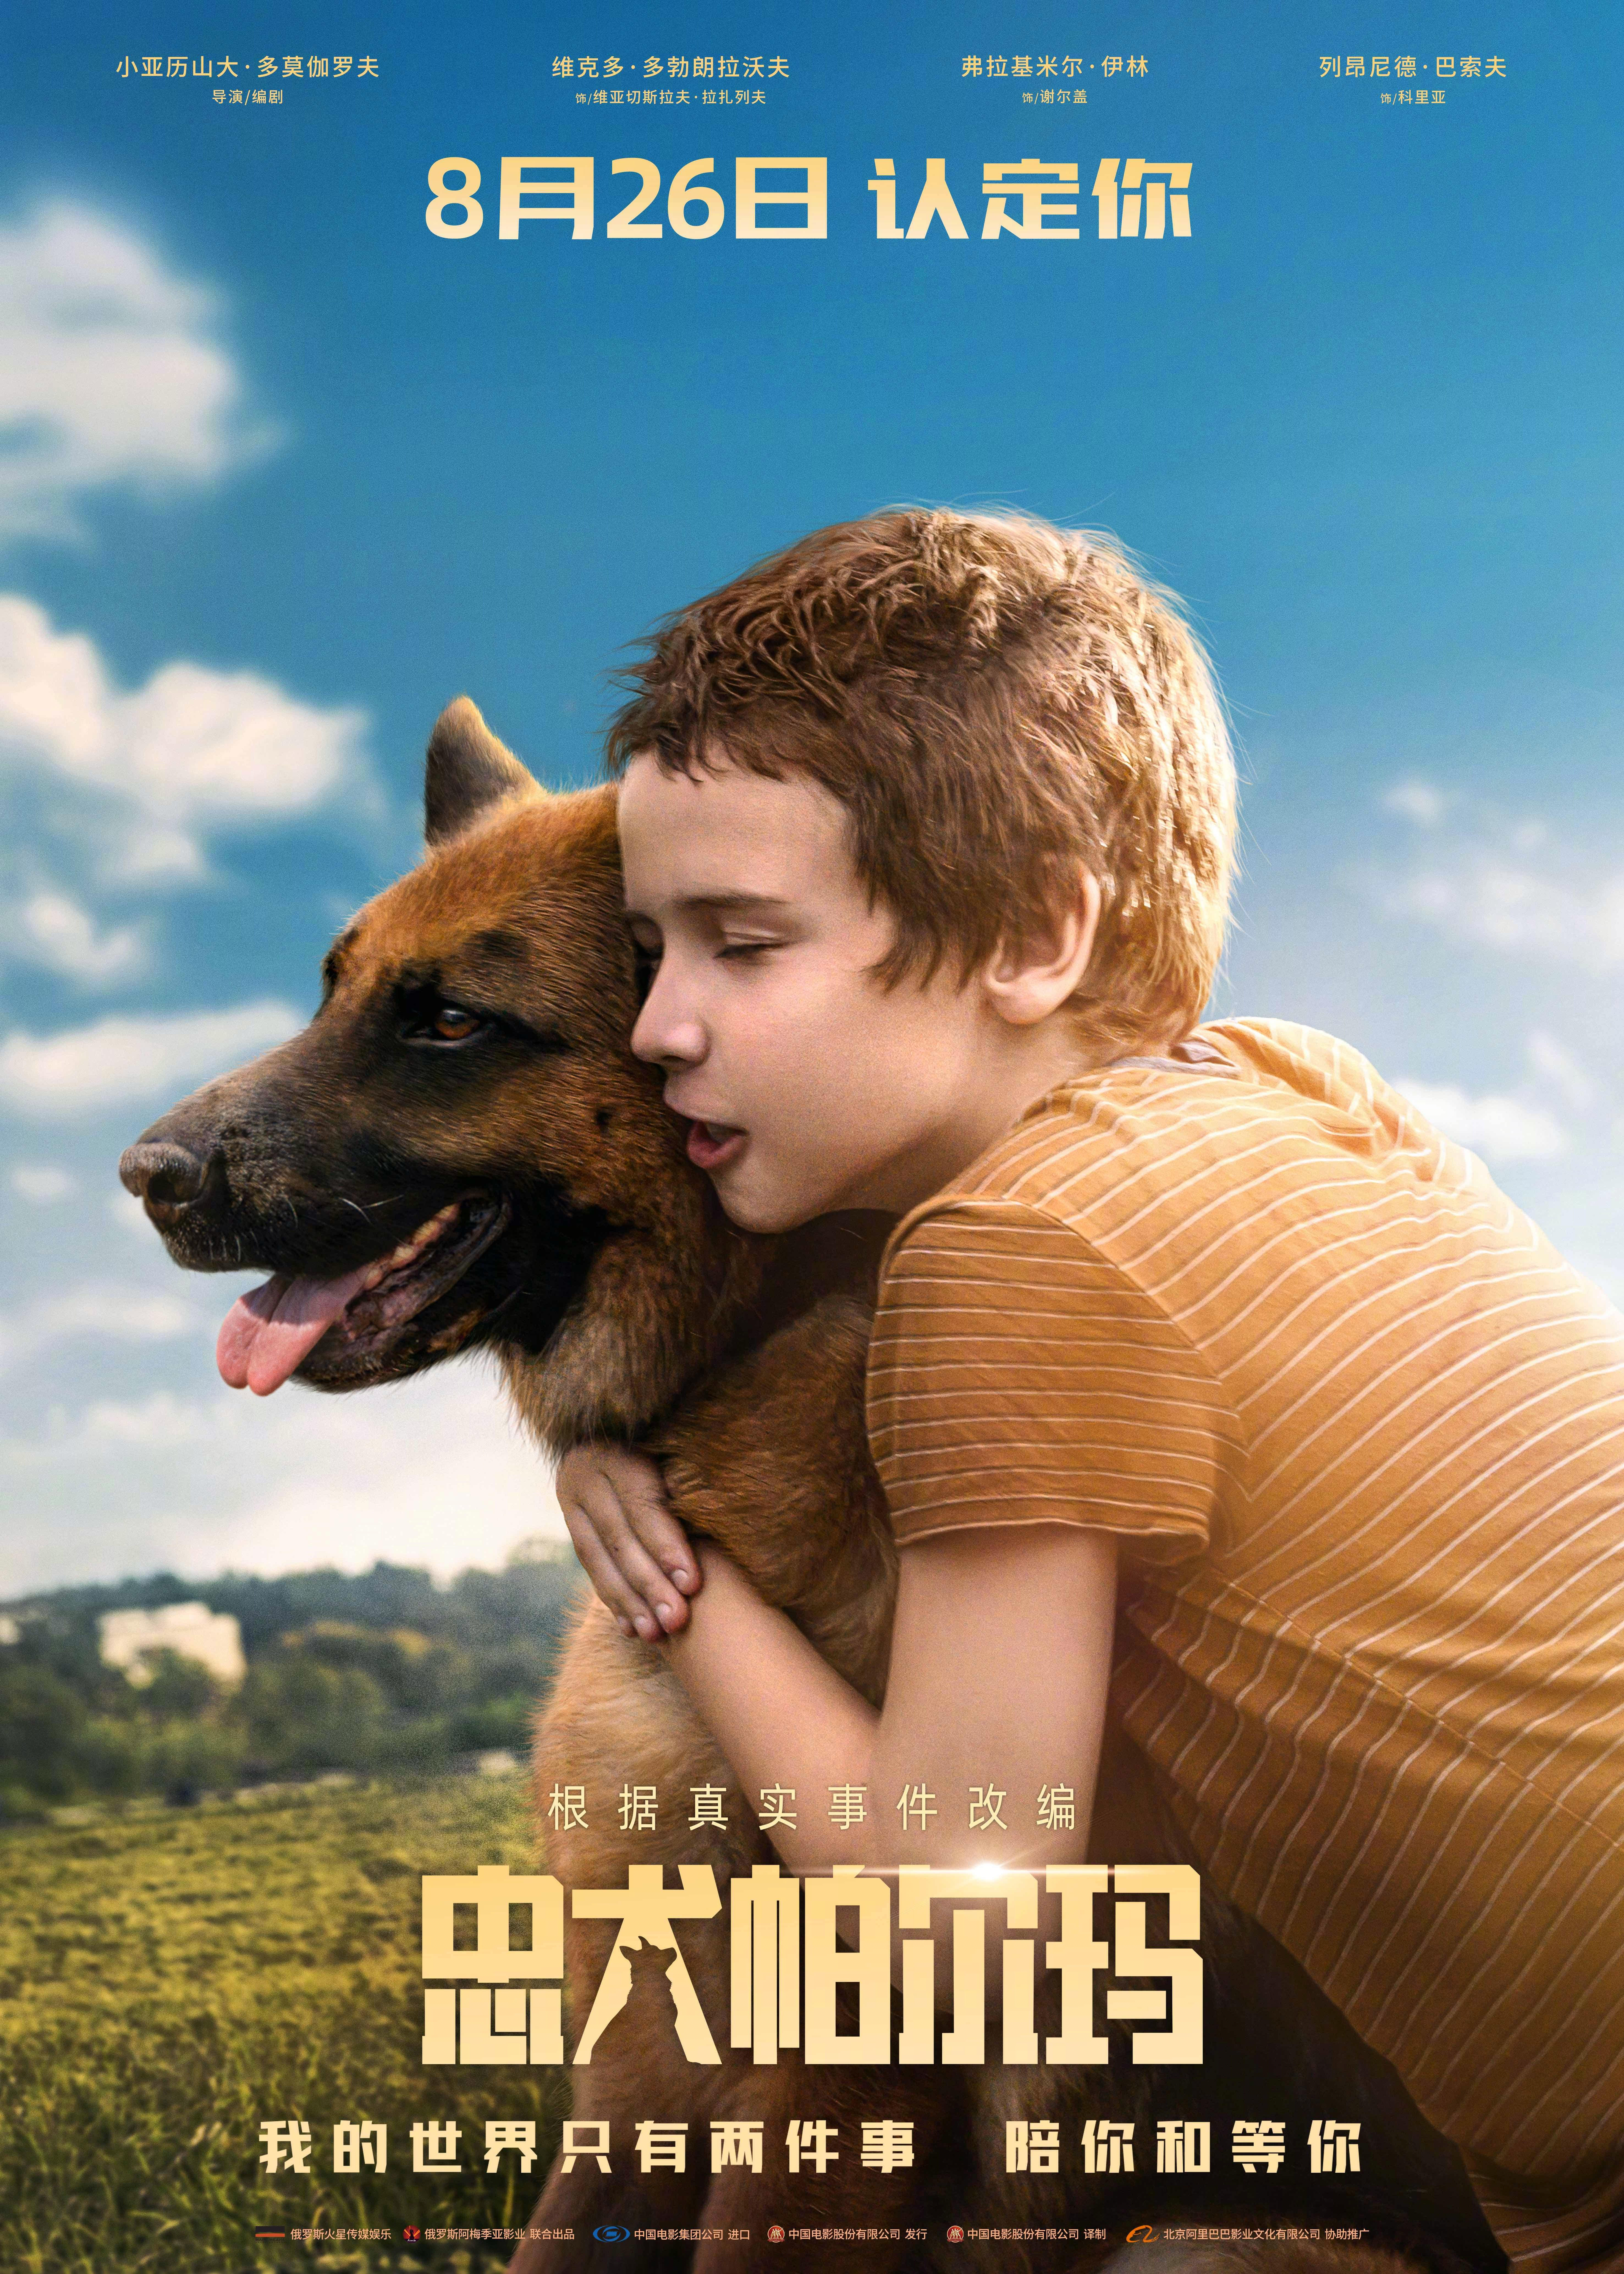 俄罗斯电影《忠犬帕尔玛》发定档海报 8月26日全国上映